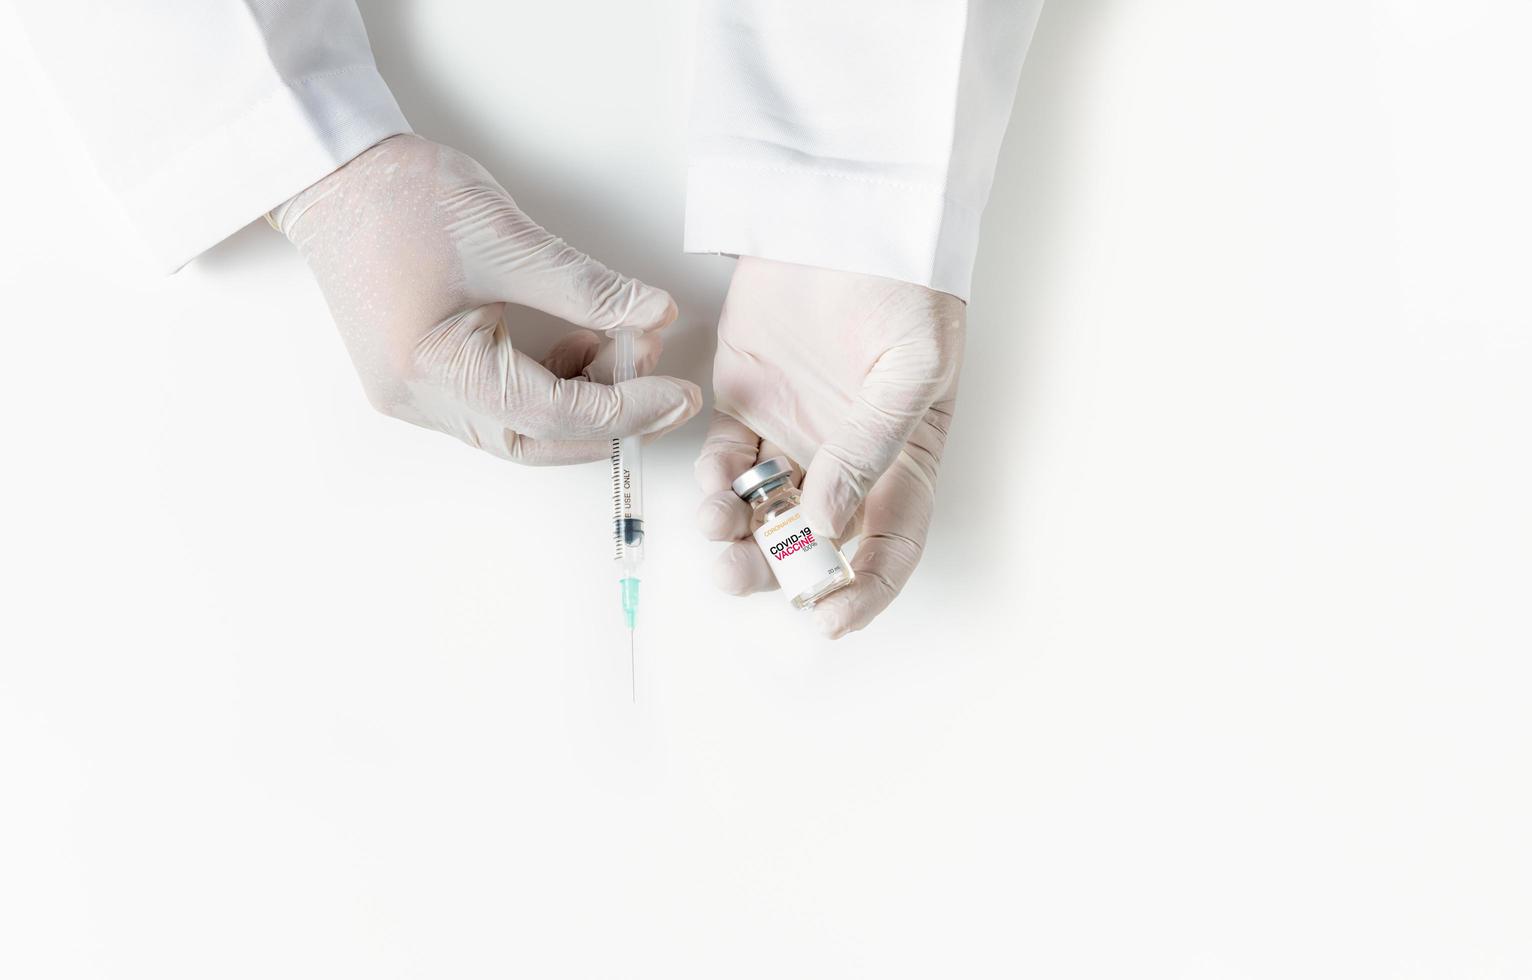 Arzt oder Wissenschaftler Hand im Weiß Handschuhe halten Grippe, Masern, Coronavirus Impfstoff Schuss foto